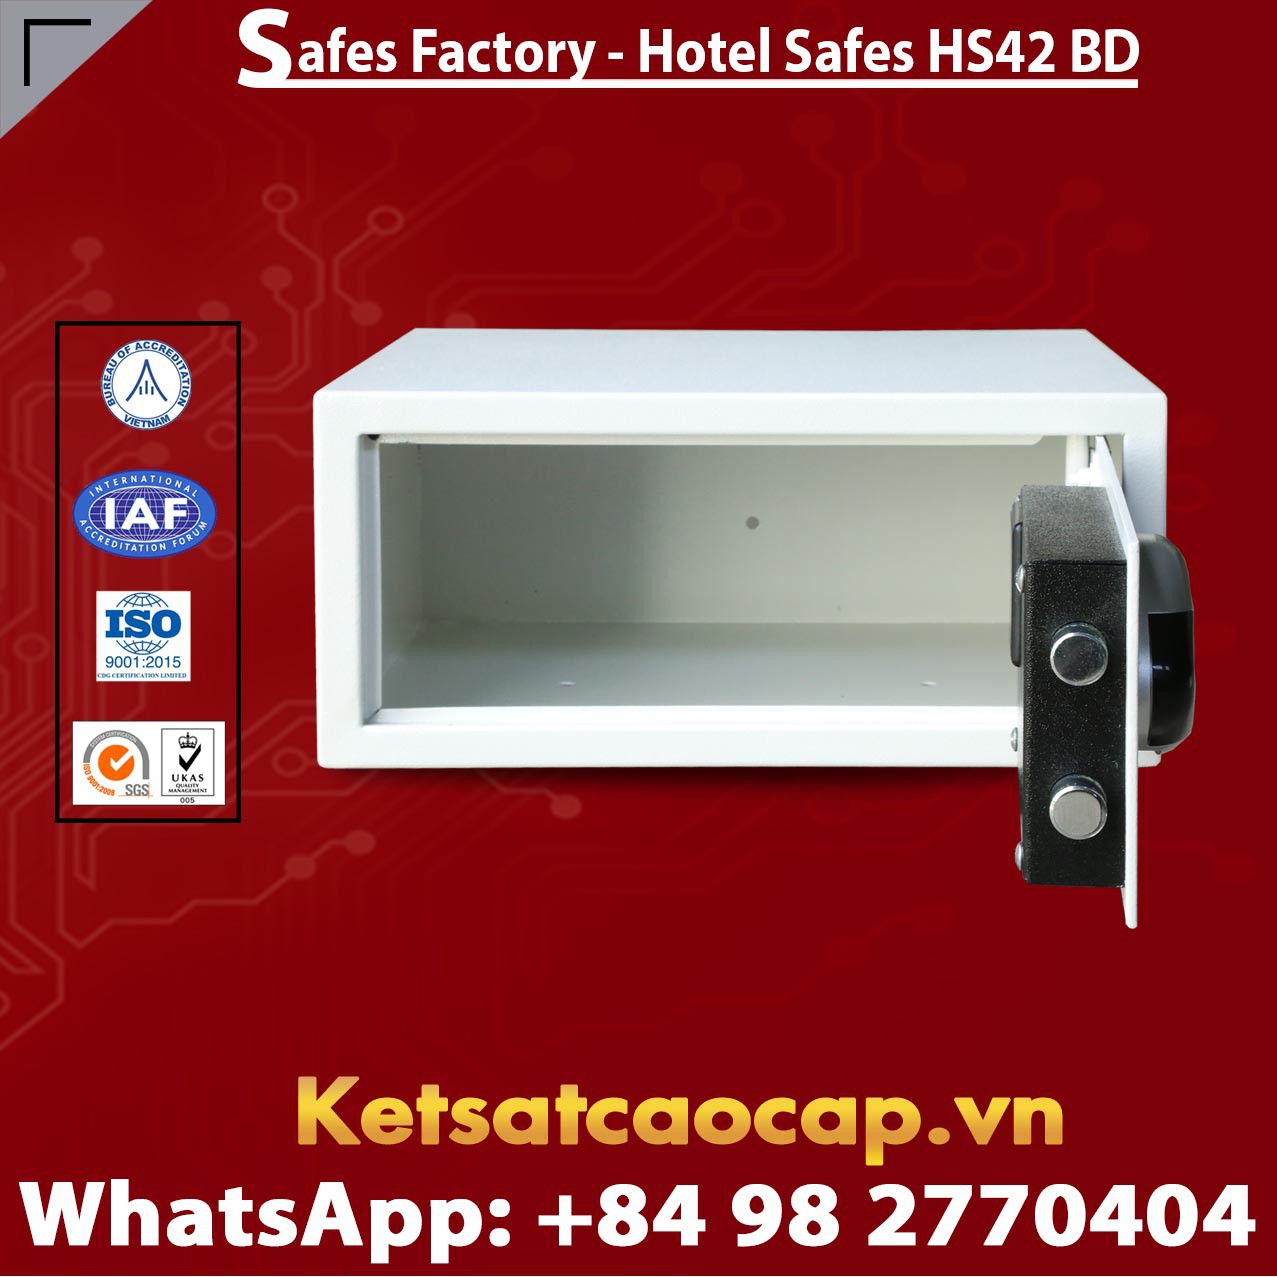 Safes in Hotel WELKO HS42 BD